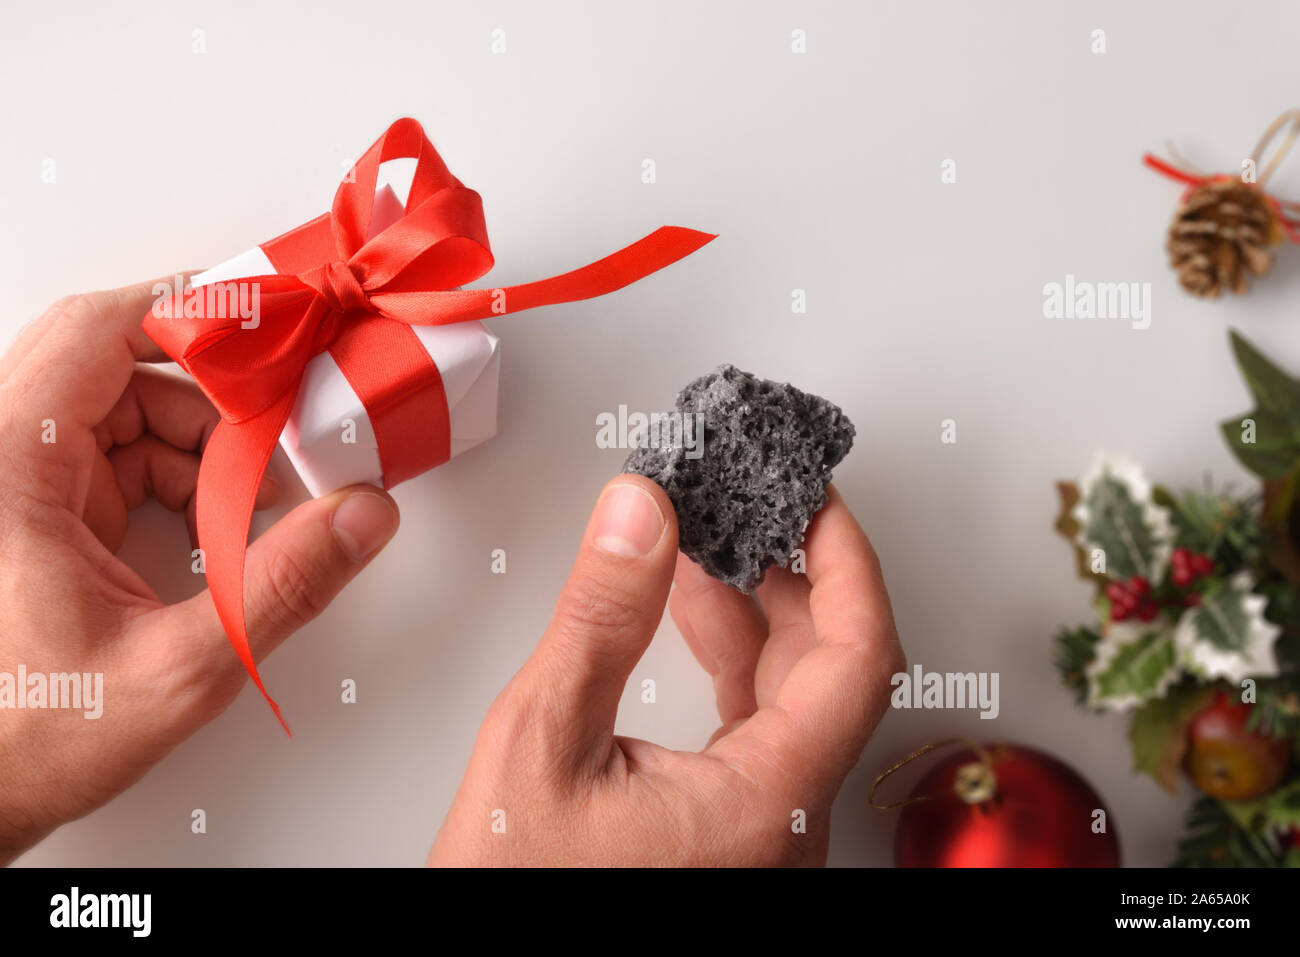 Hände mit Geschenk und Kohle am Weihnachtstag. Konzept für gutes oder schlechtes Verhalten zu belohnen. Horizontale Komposition. Ansicht von oben. Stockfoto